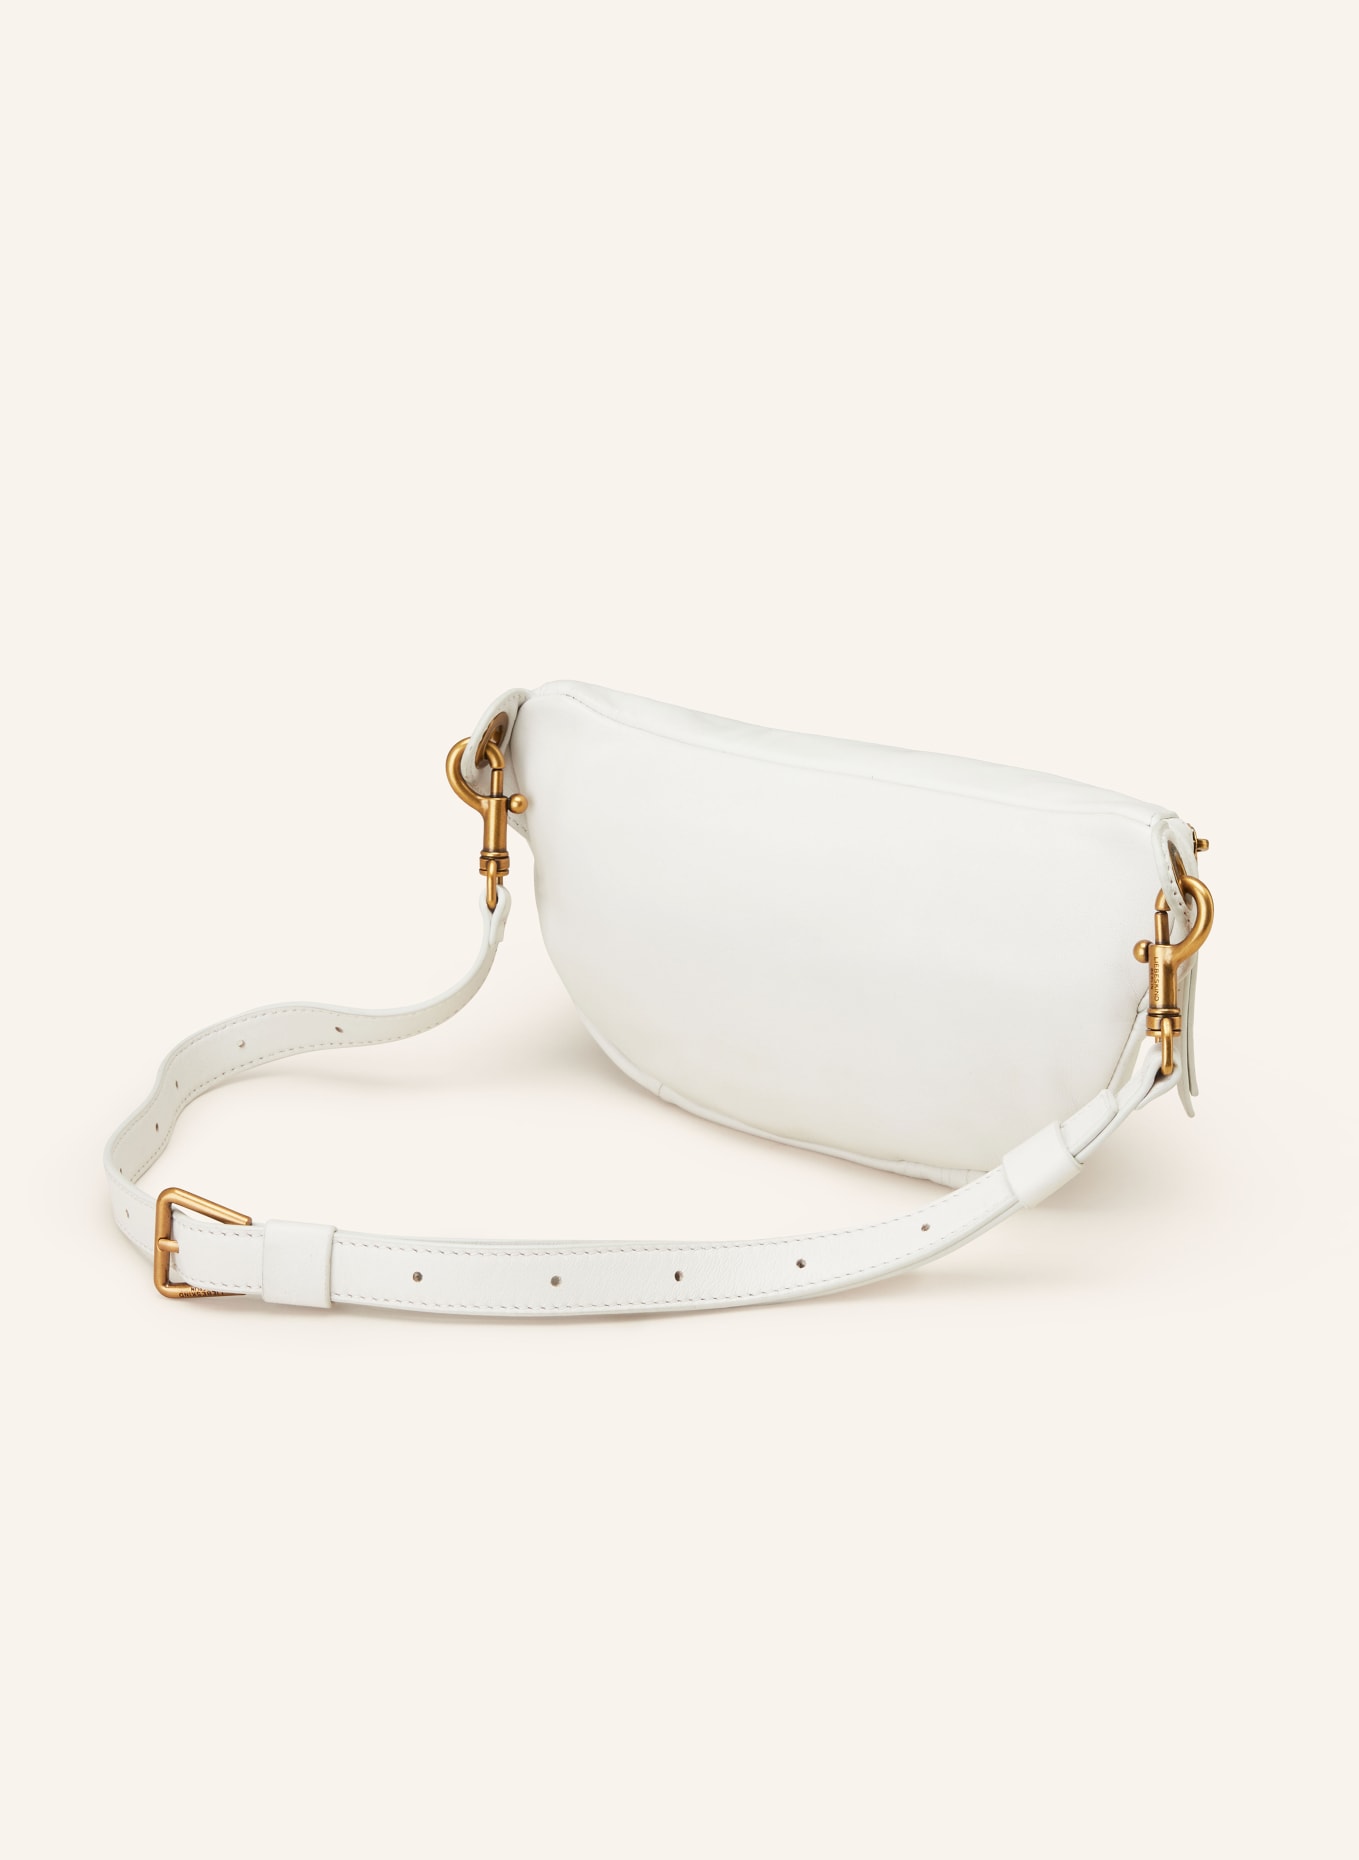 LIEBESKIND Waist bag TAVIA, Color: WHITE (Image 2)